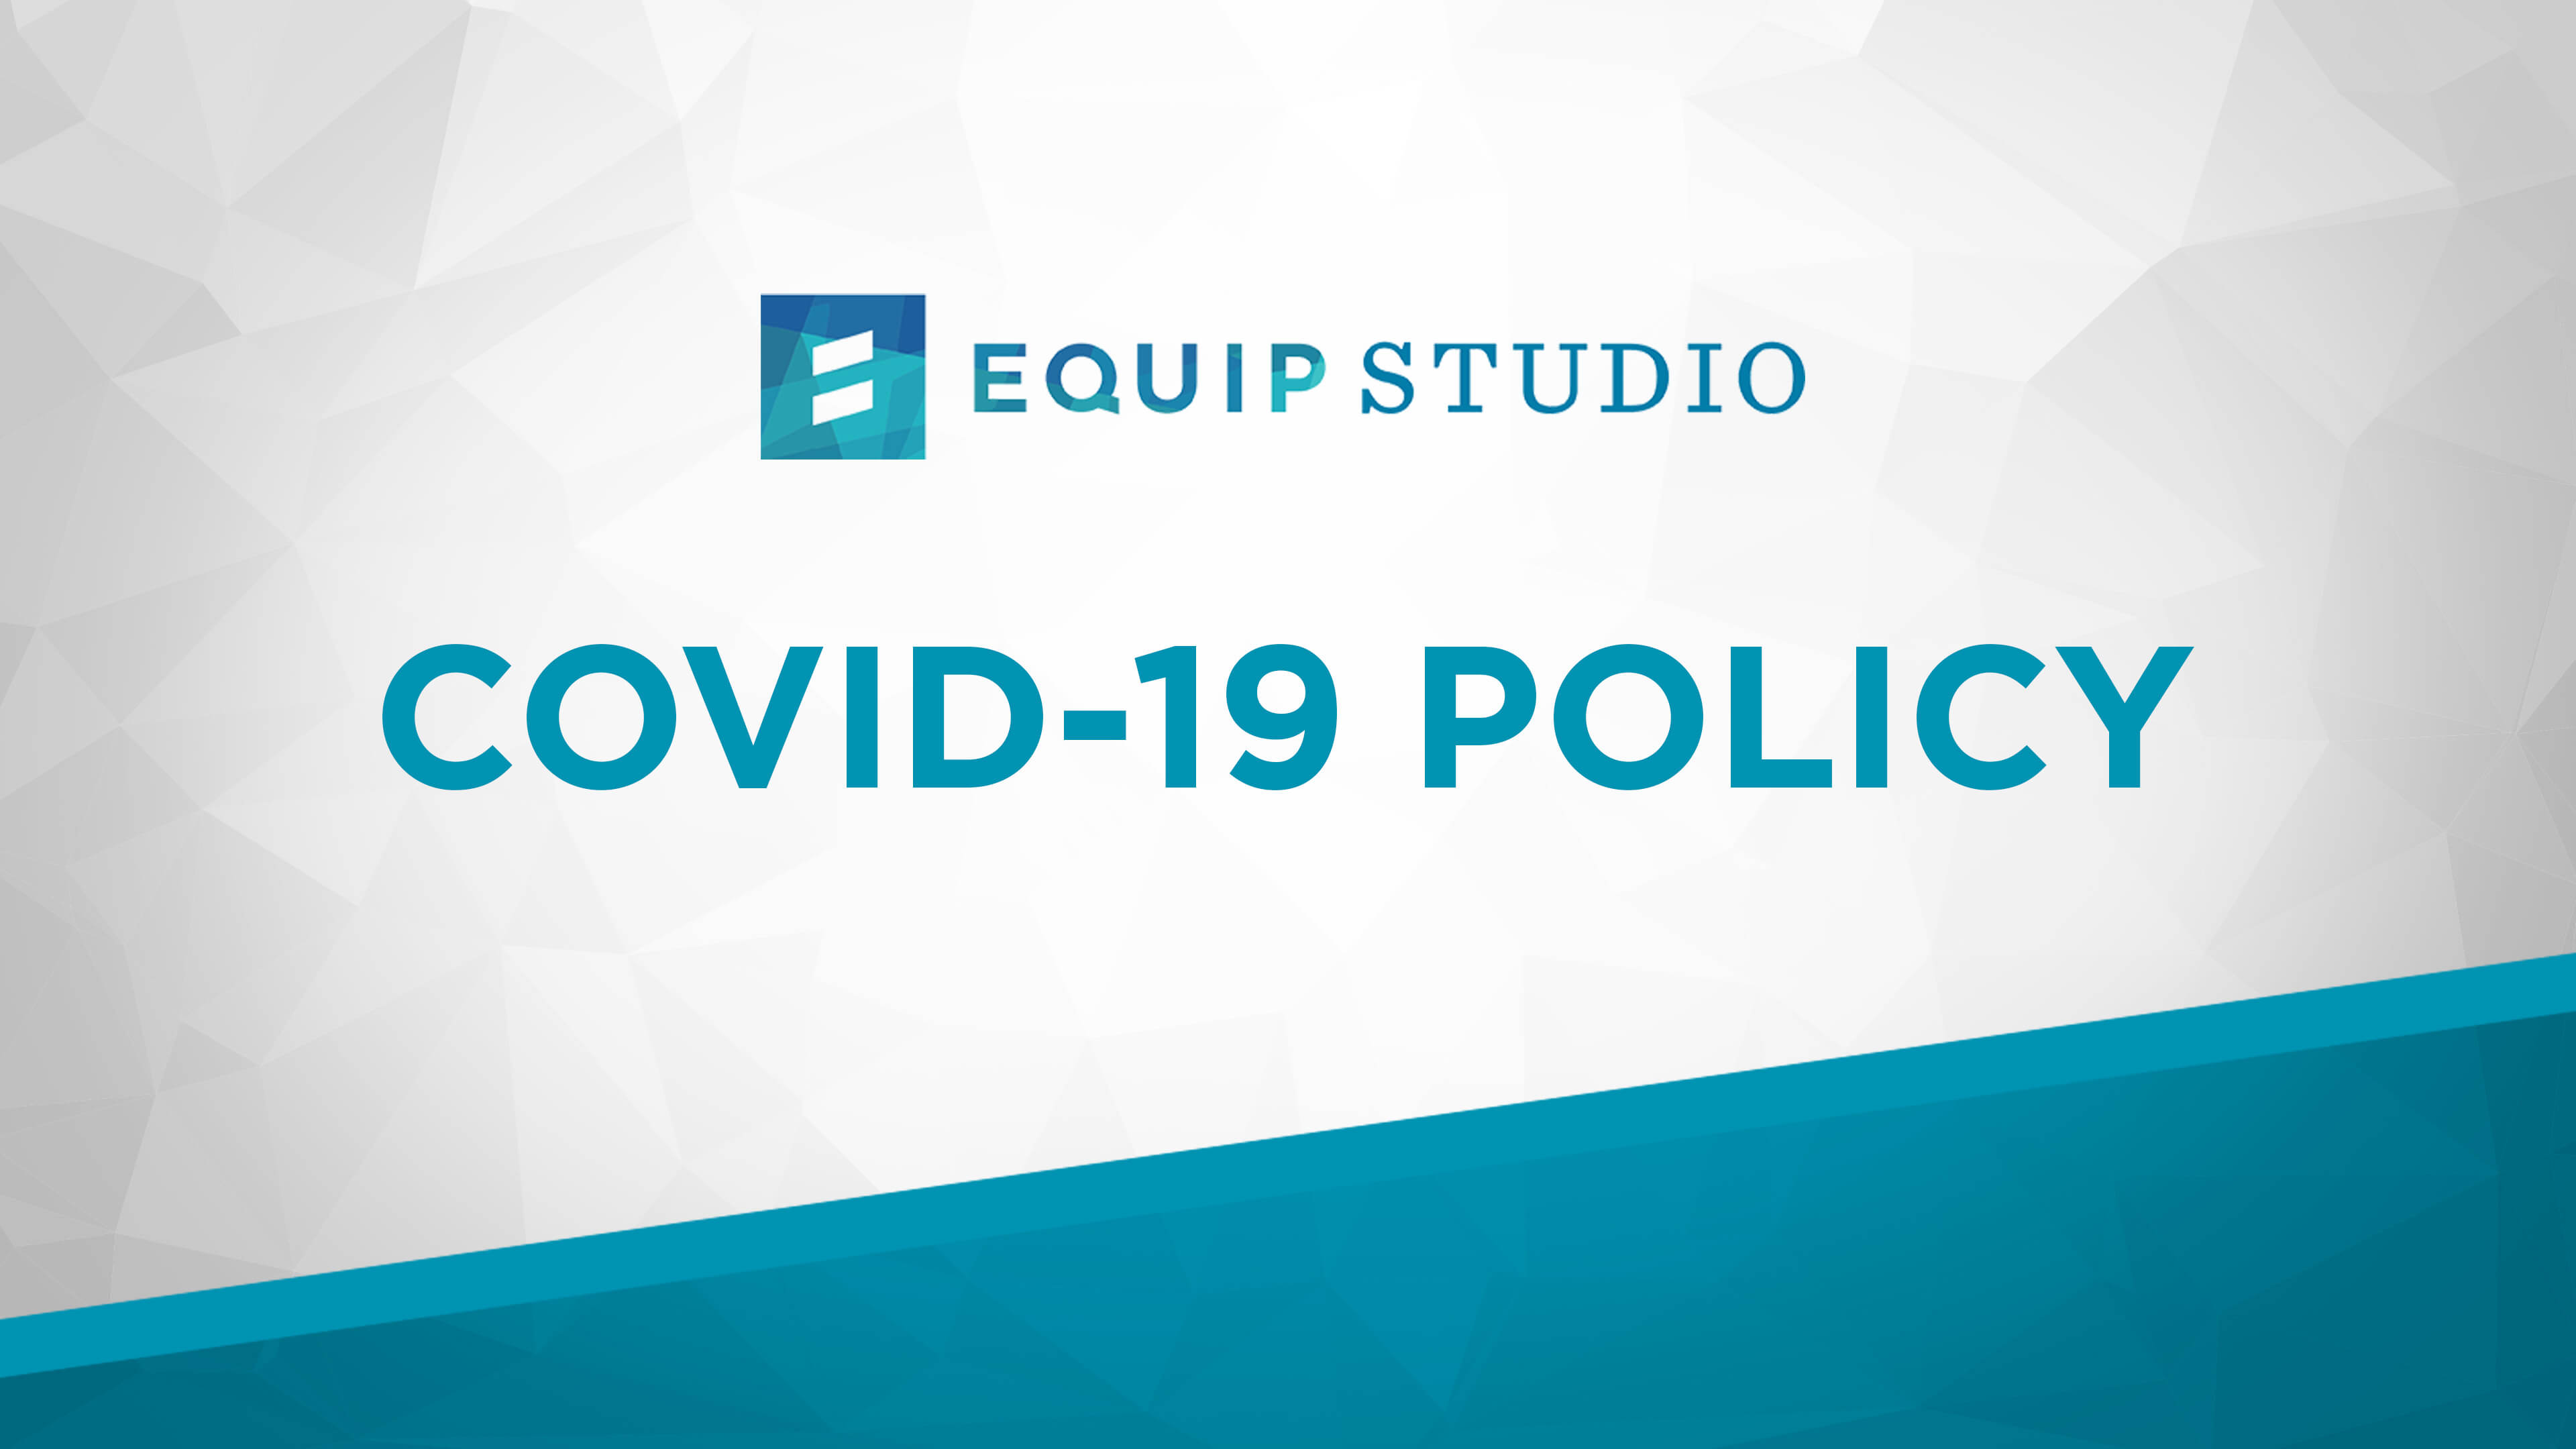 Equip Studio COVID-19 Policy - Equip Studio COVID-19 Policy